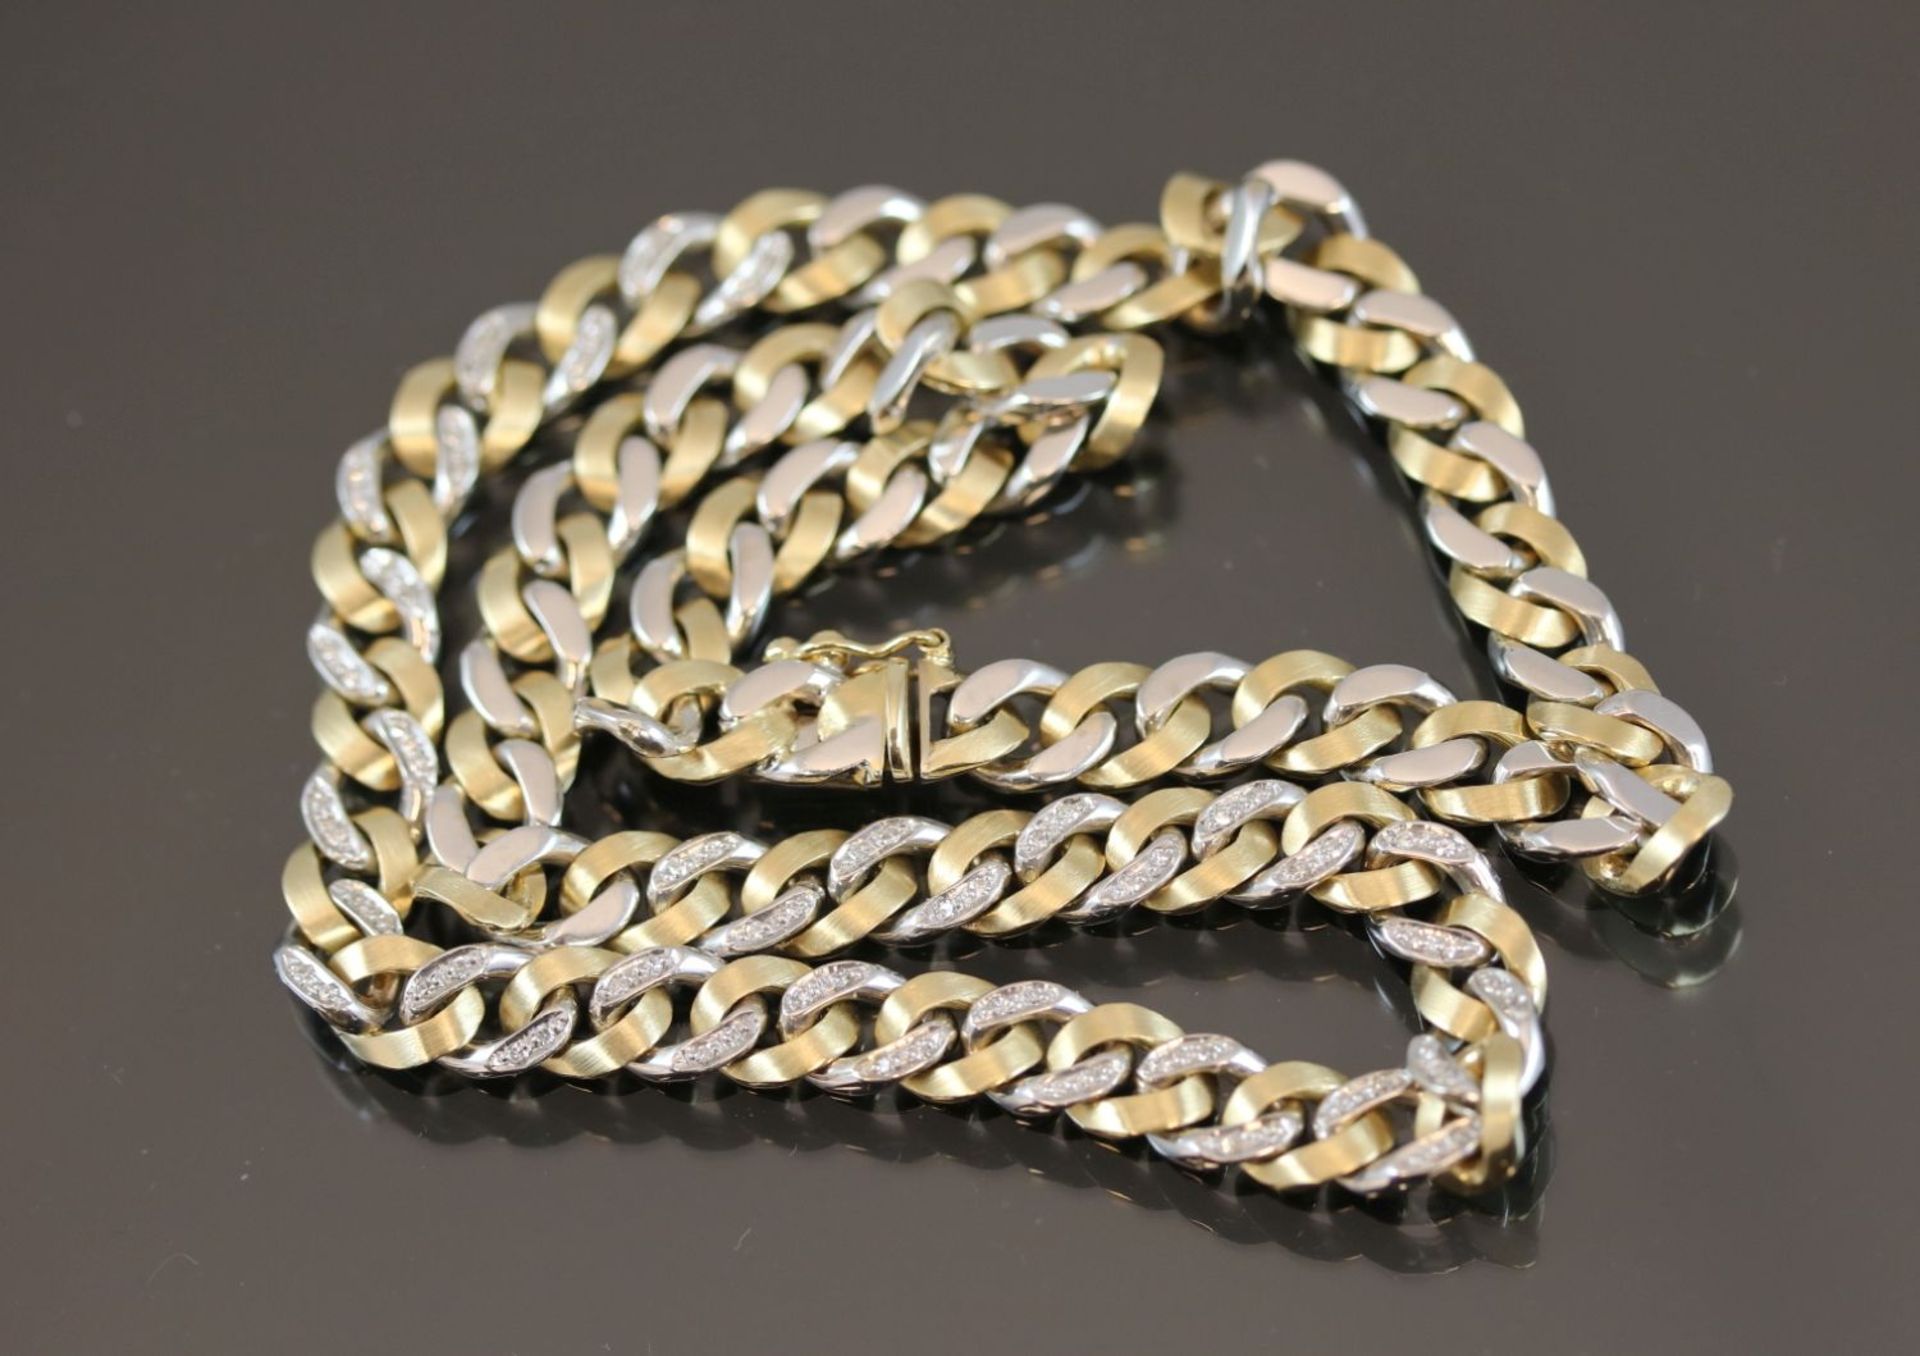 Diamant-Halskette, 585 Gold47,7 Gramm 72 Diamanten, 0,35 ct., w/si. Länge: 42 cm Schätzpreis: 4000,- - Image 3 of 4